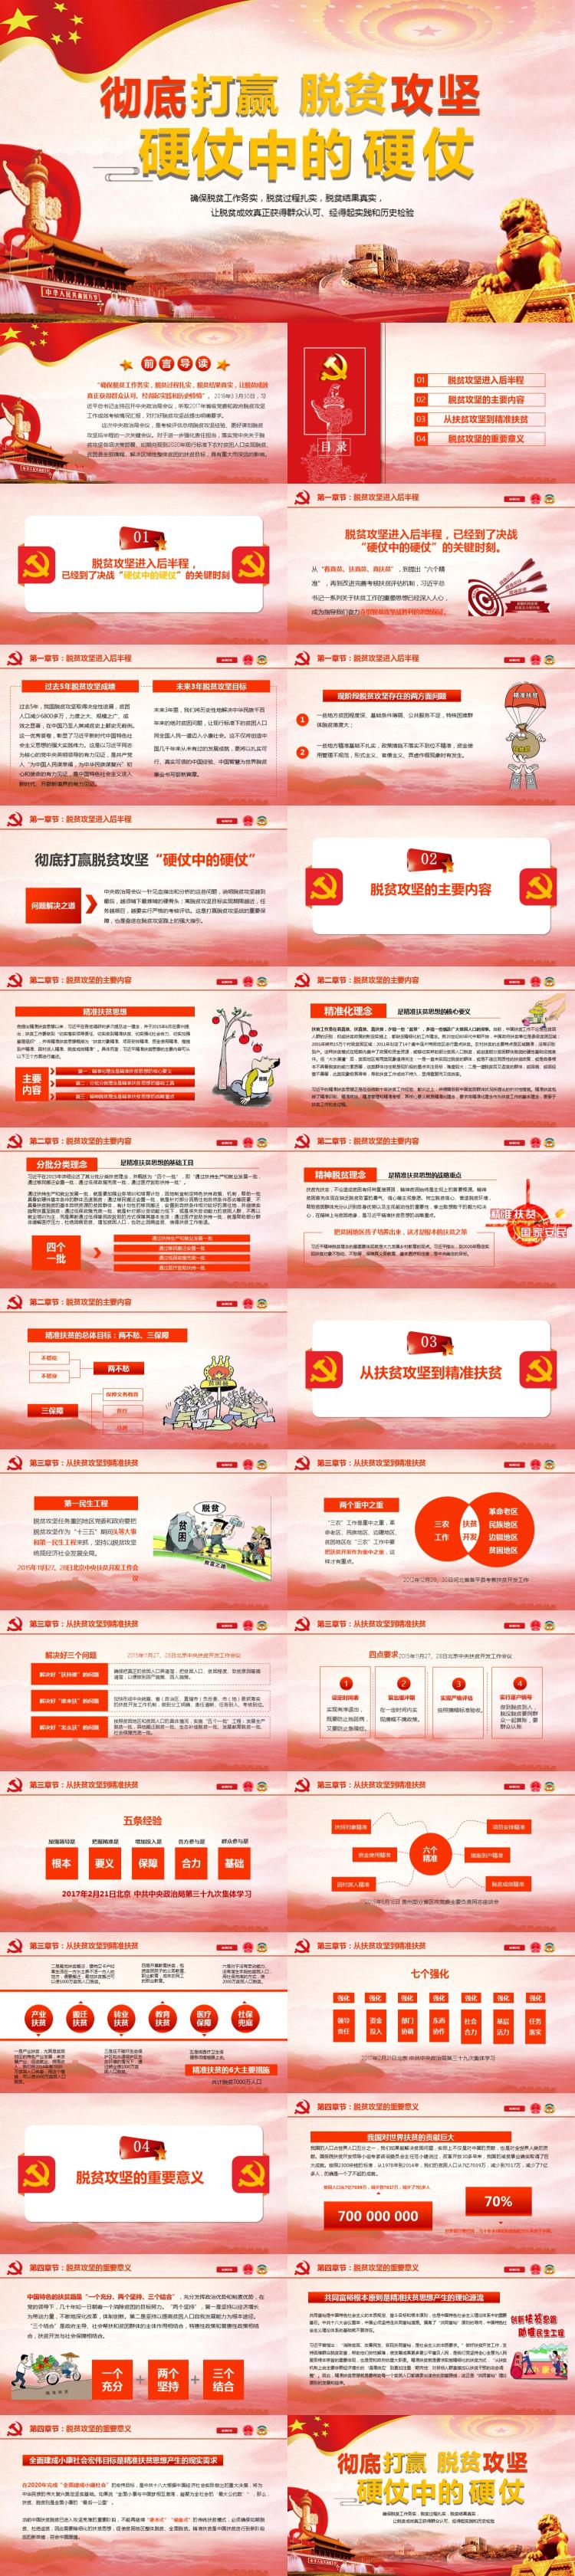 红色中国风党政脱贫扶坚节日庆典PPT模版